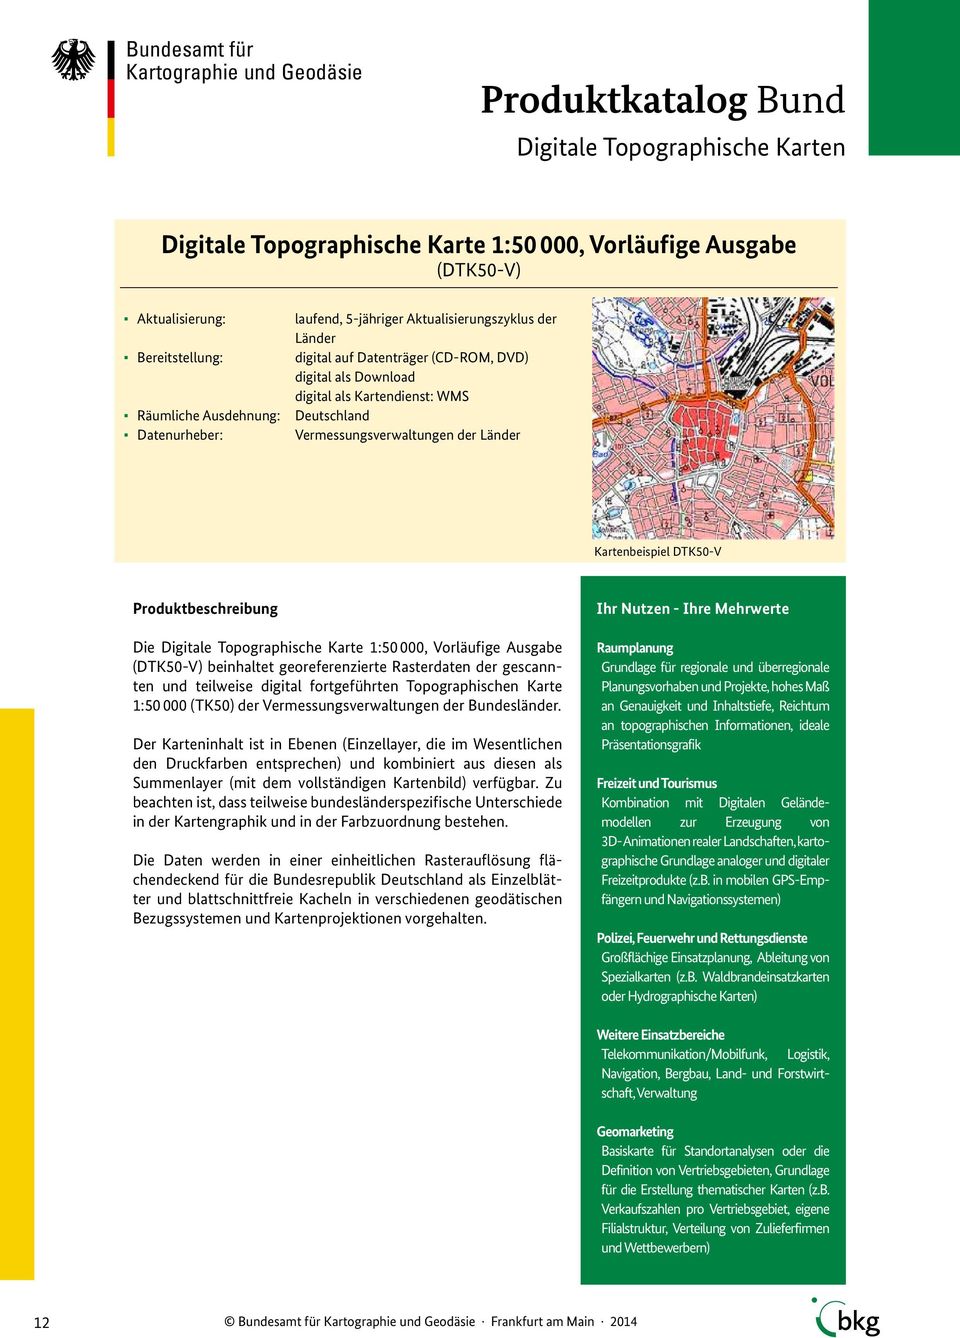 georeferenzierte Rasterdaten der gescannten und teilweise digital fortgeführten Topographischen Karte 1:50 000 (TK50) der Vermessungsverwaltungen der Bundesländer.